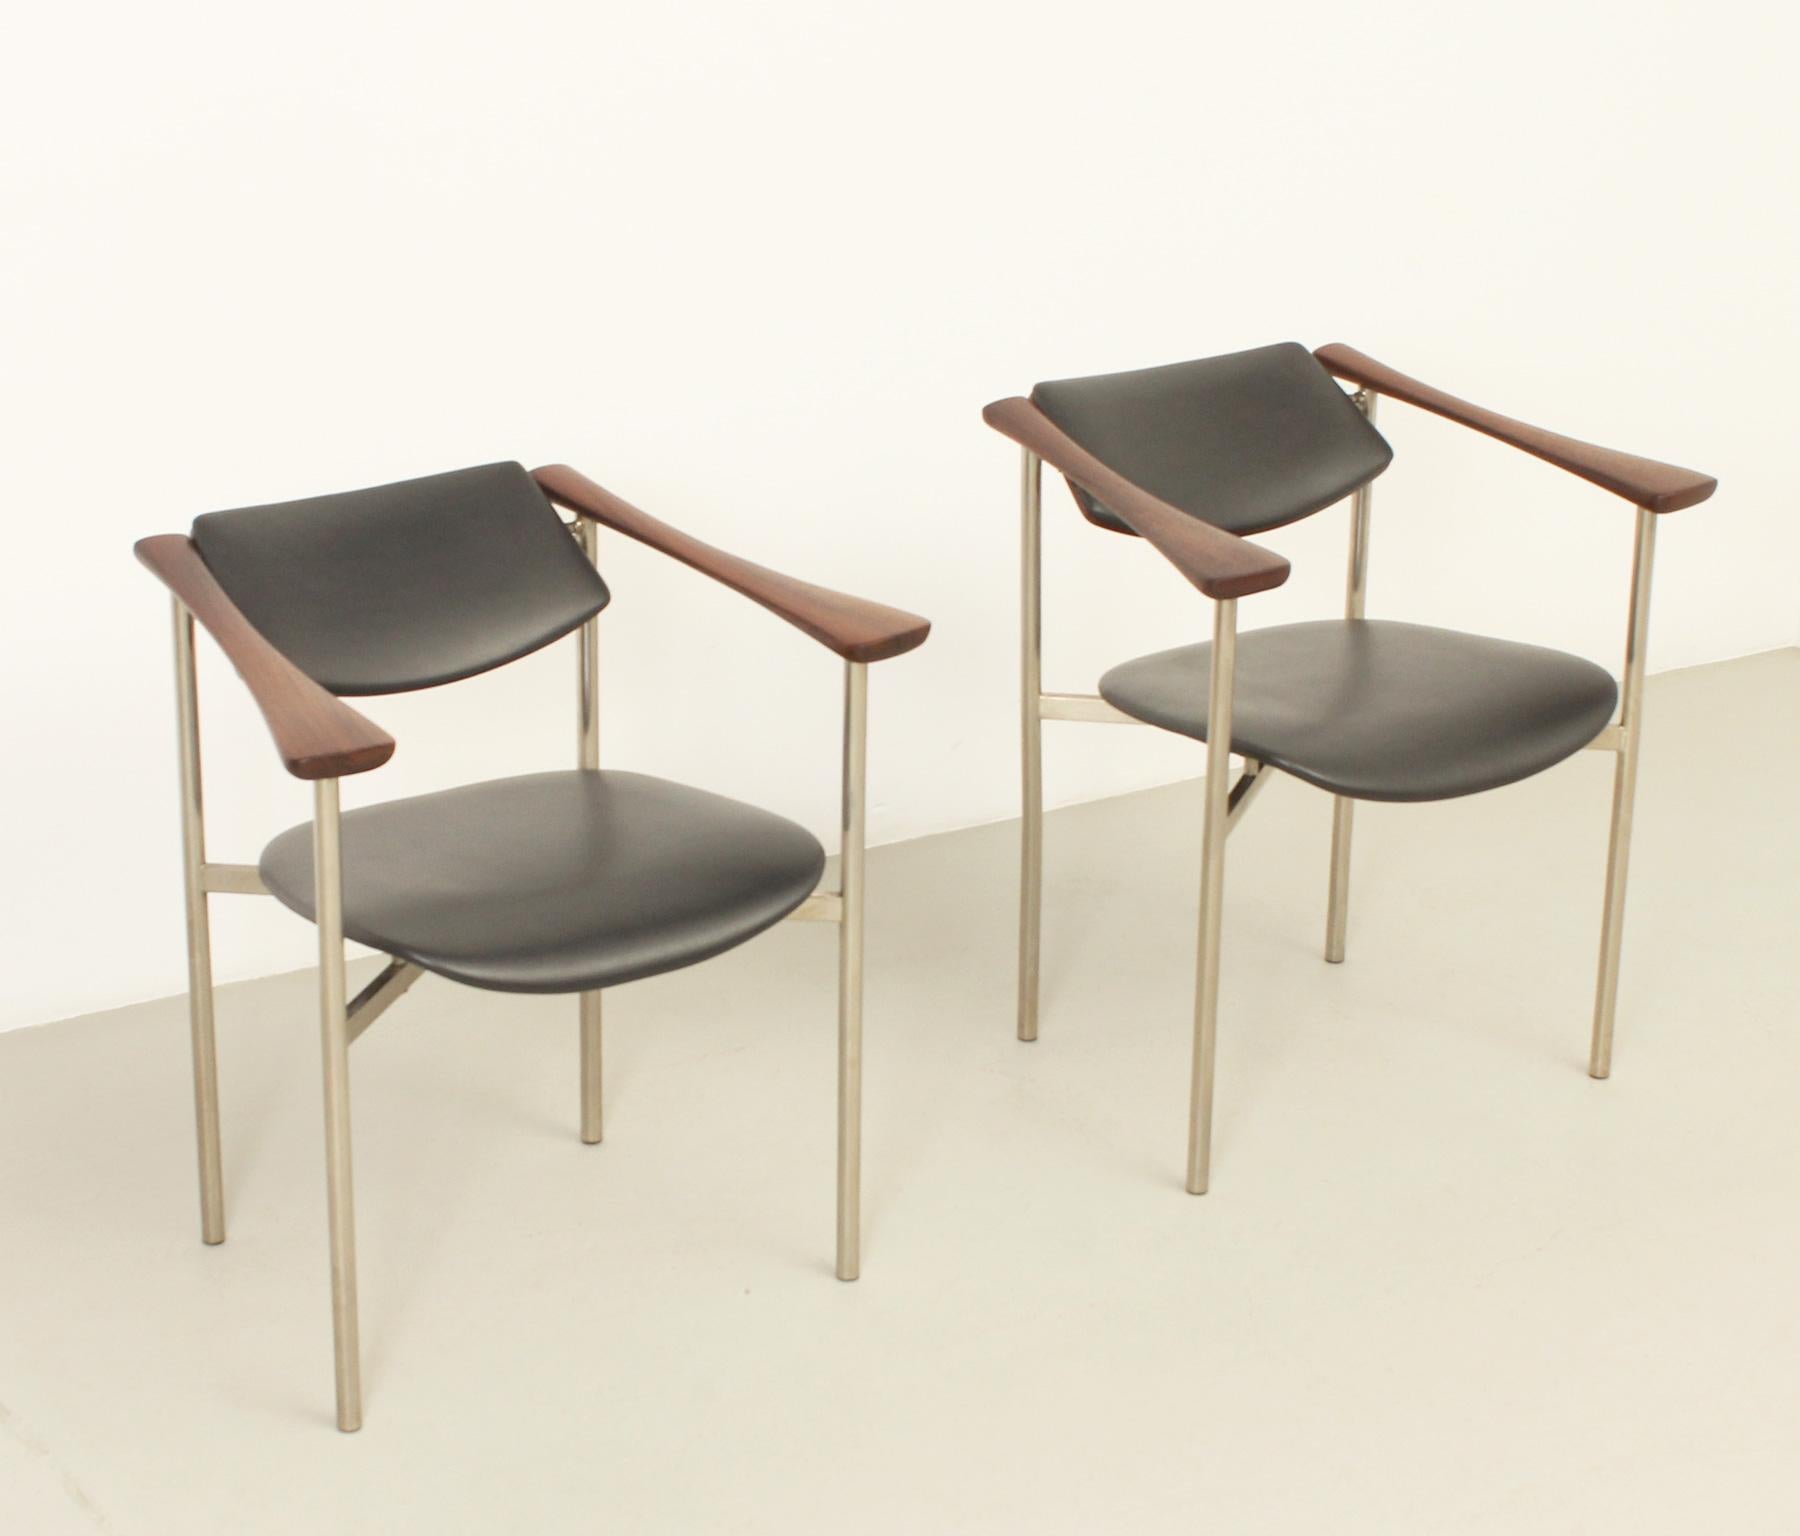 Paar Sessel mit drehbarer Rückenlehne aus den 1960er Jahren, Designer oder Hersteller unbekannt. Sehr stilvolle Stühle mit drehbarer Rückenlehne, die sich beim Sitzen verstellen lässt, Gestelle aus vernickeltem Stahl, Hartholz und Teakholz mit